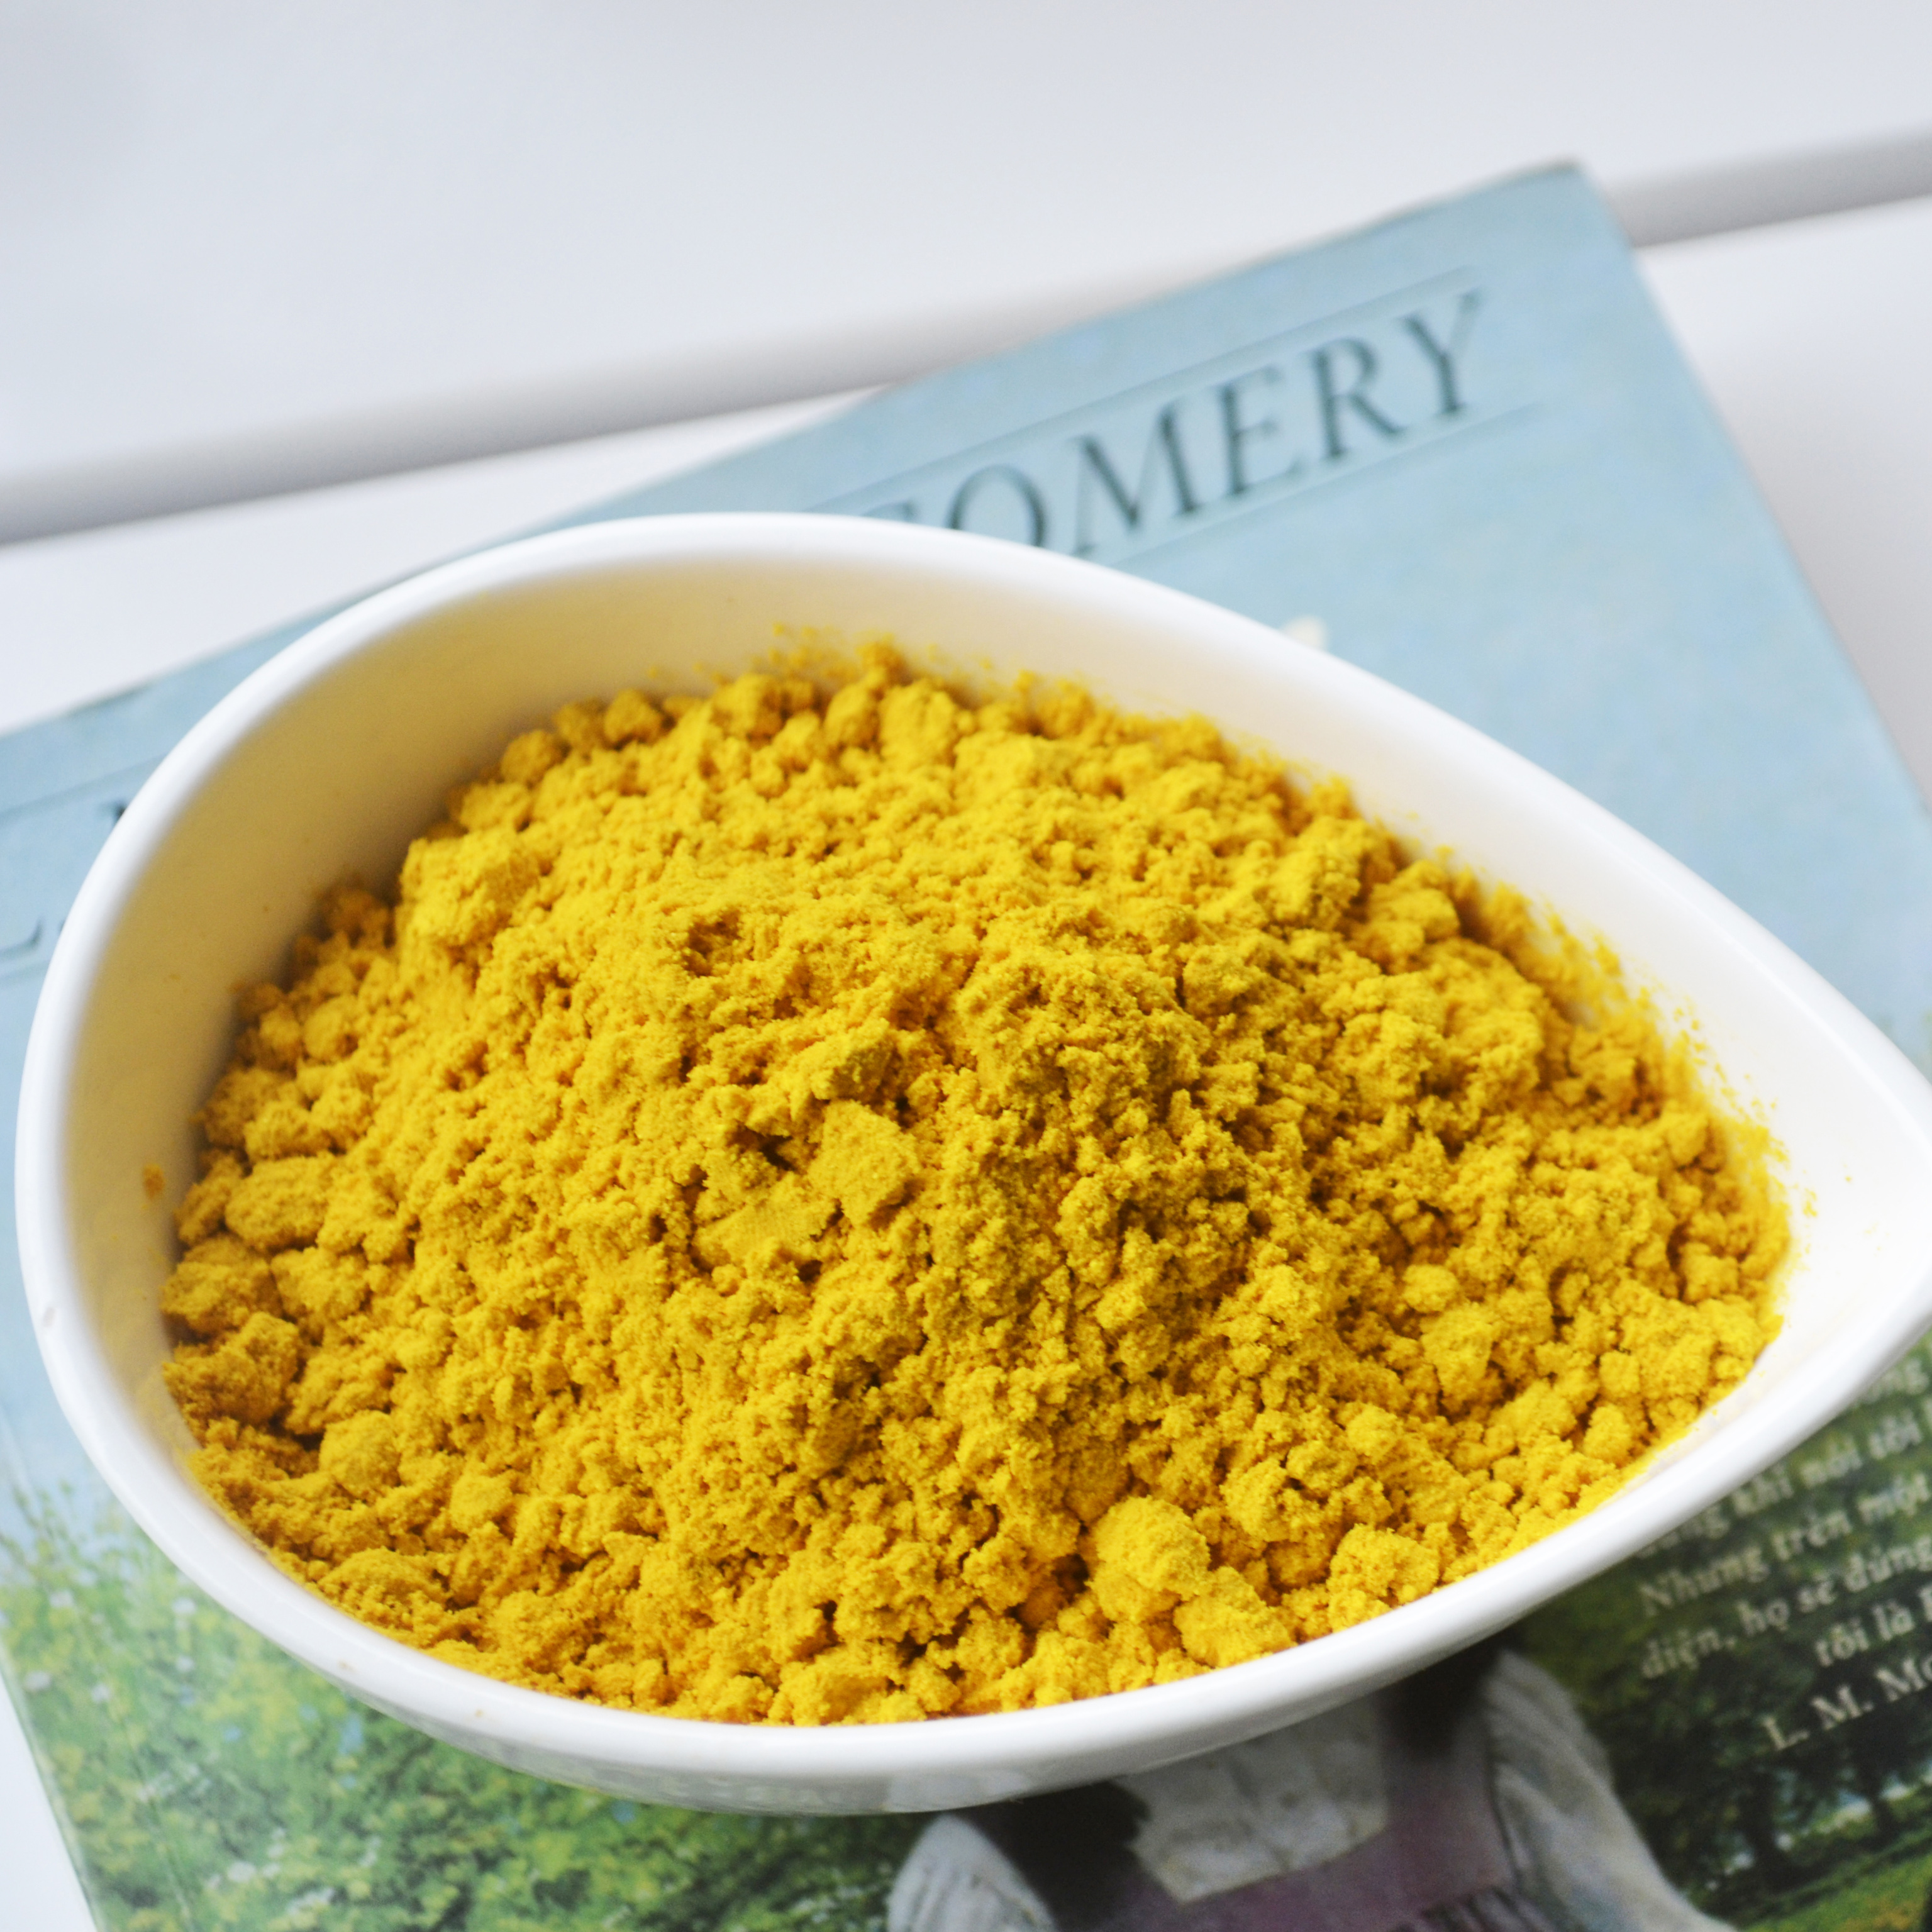 Tinh bột nghệ cam organic Kentary hũ 250g (10% Curcumin), đậm vị nghệ - thực phẩm chăm sóc sức khỏe từ thiên nhiên